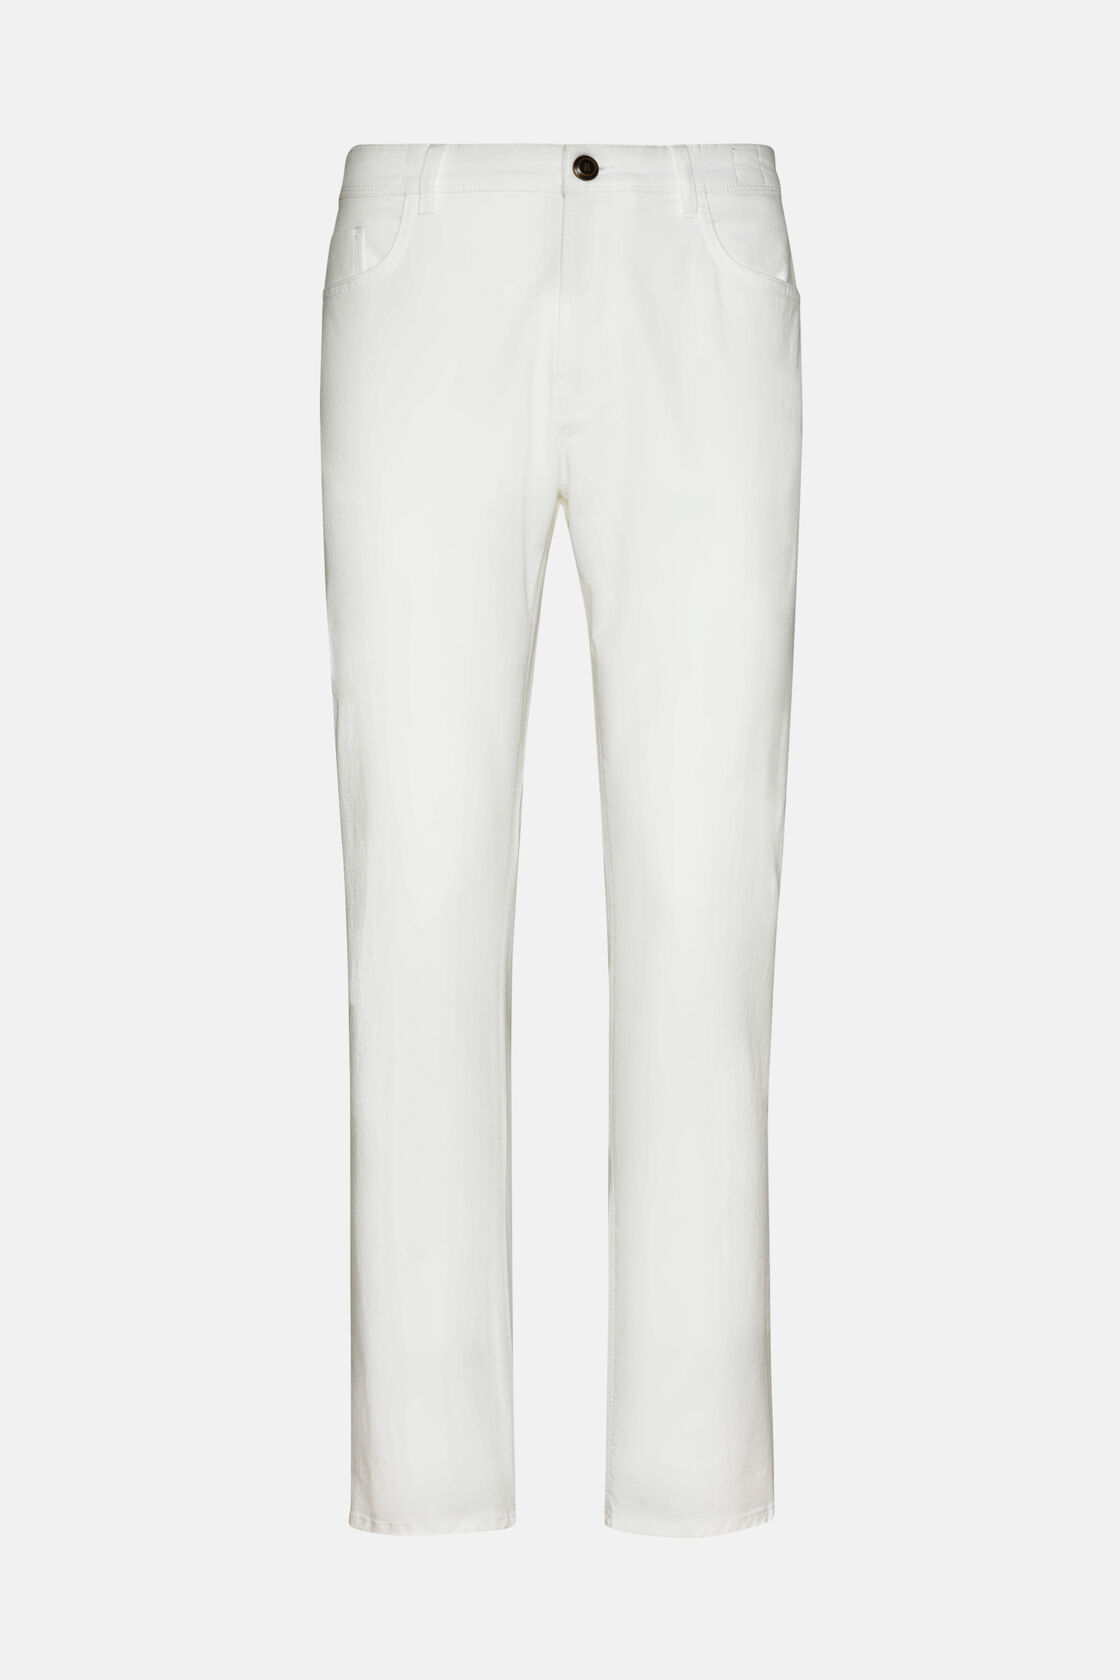 Jeans In Cotone Elasticizzato, Bianco, hi-res